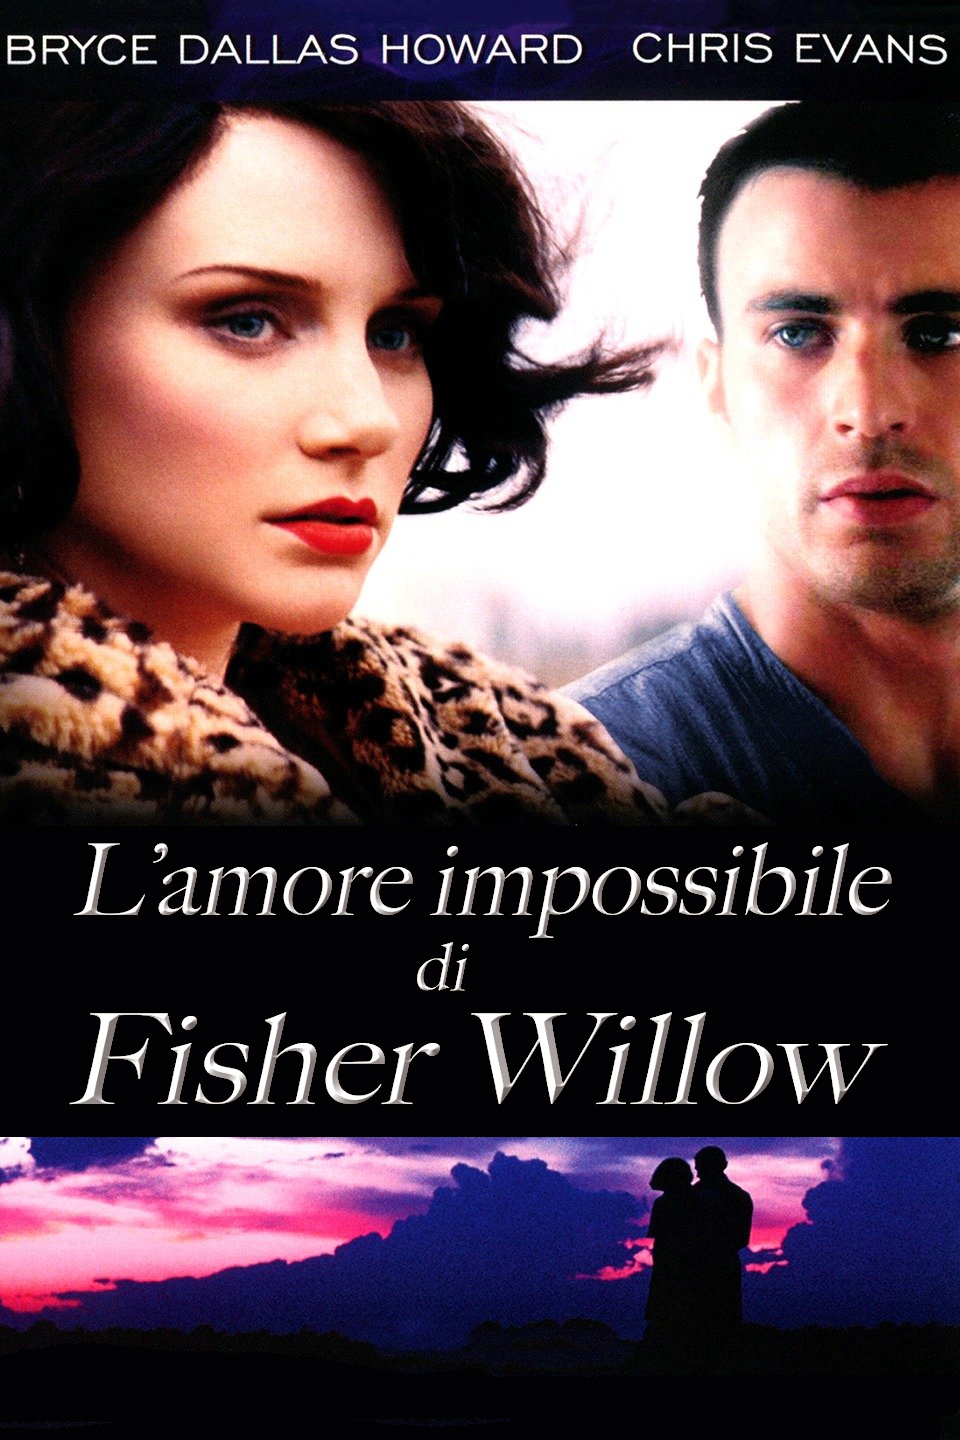 L’amore impossibile di Fisher Willow (2008)